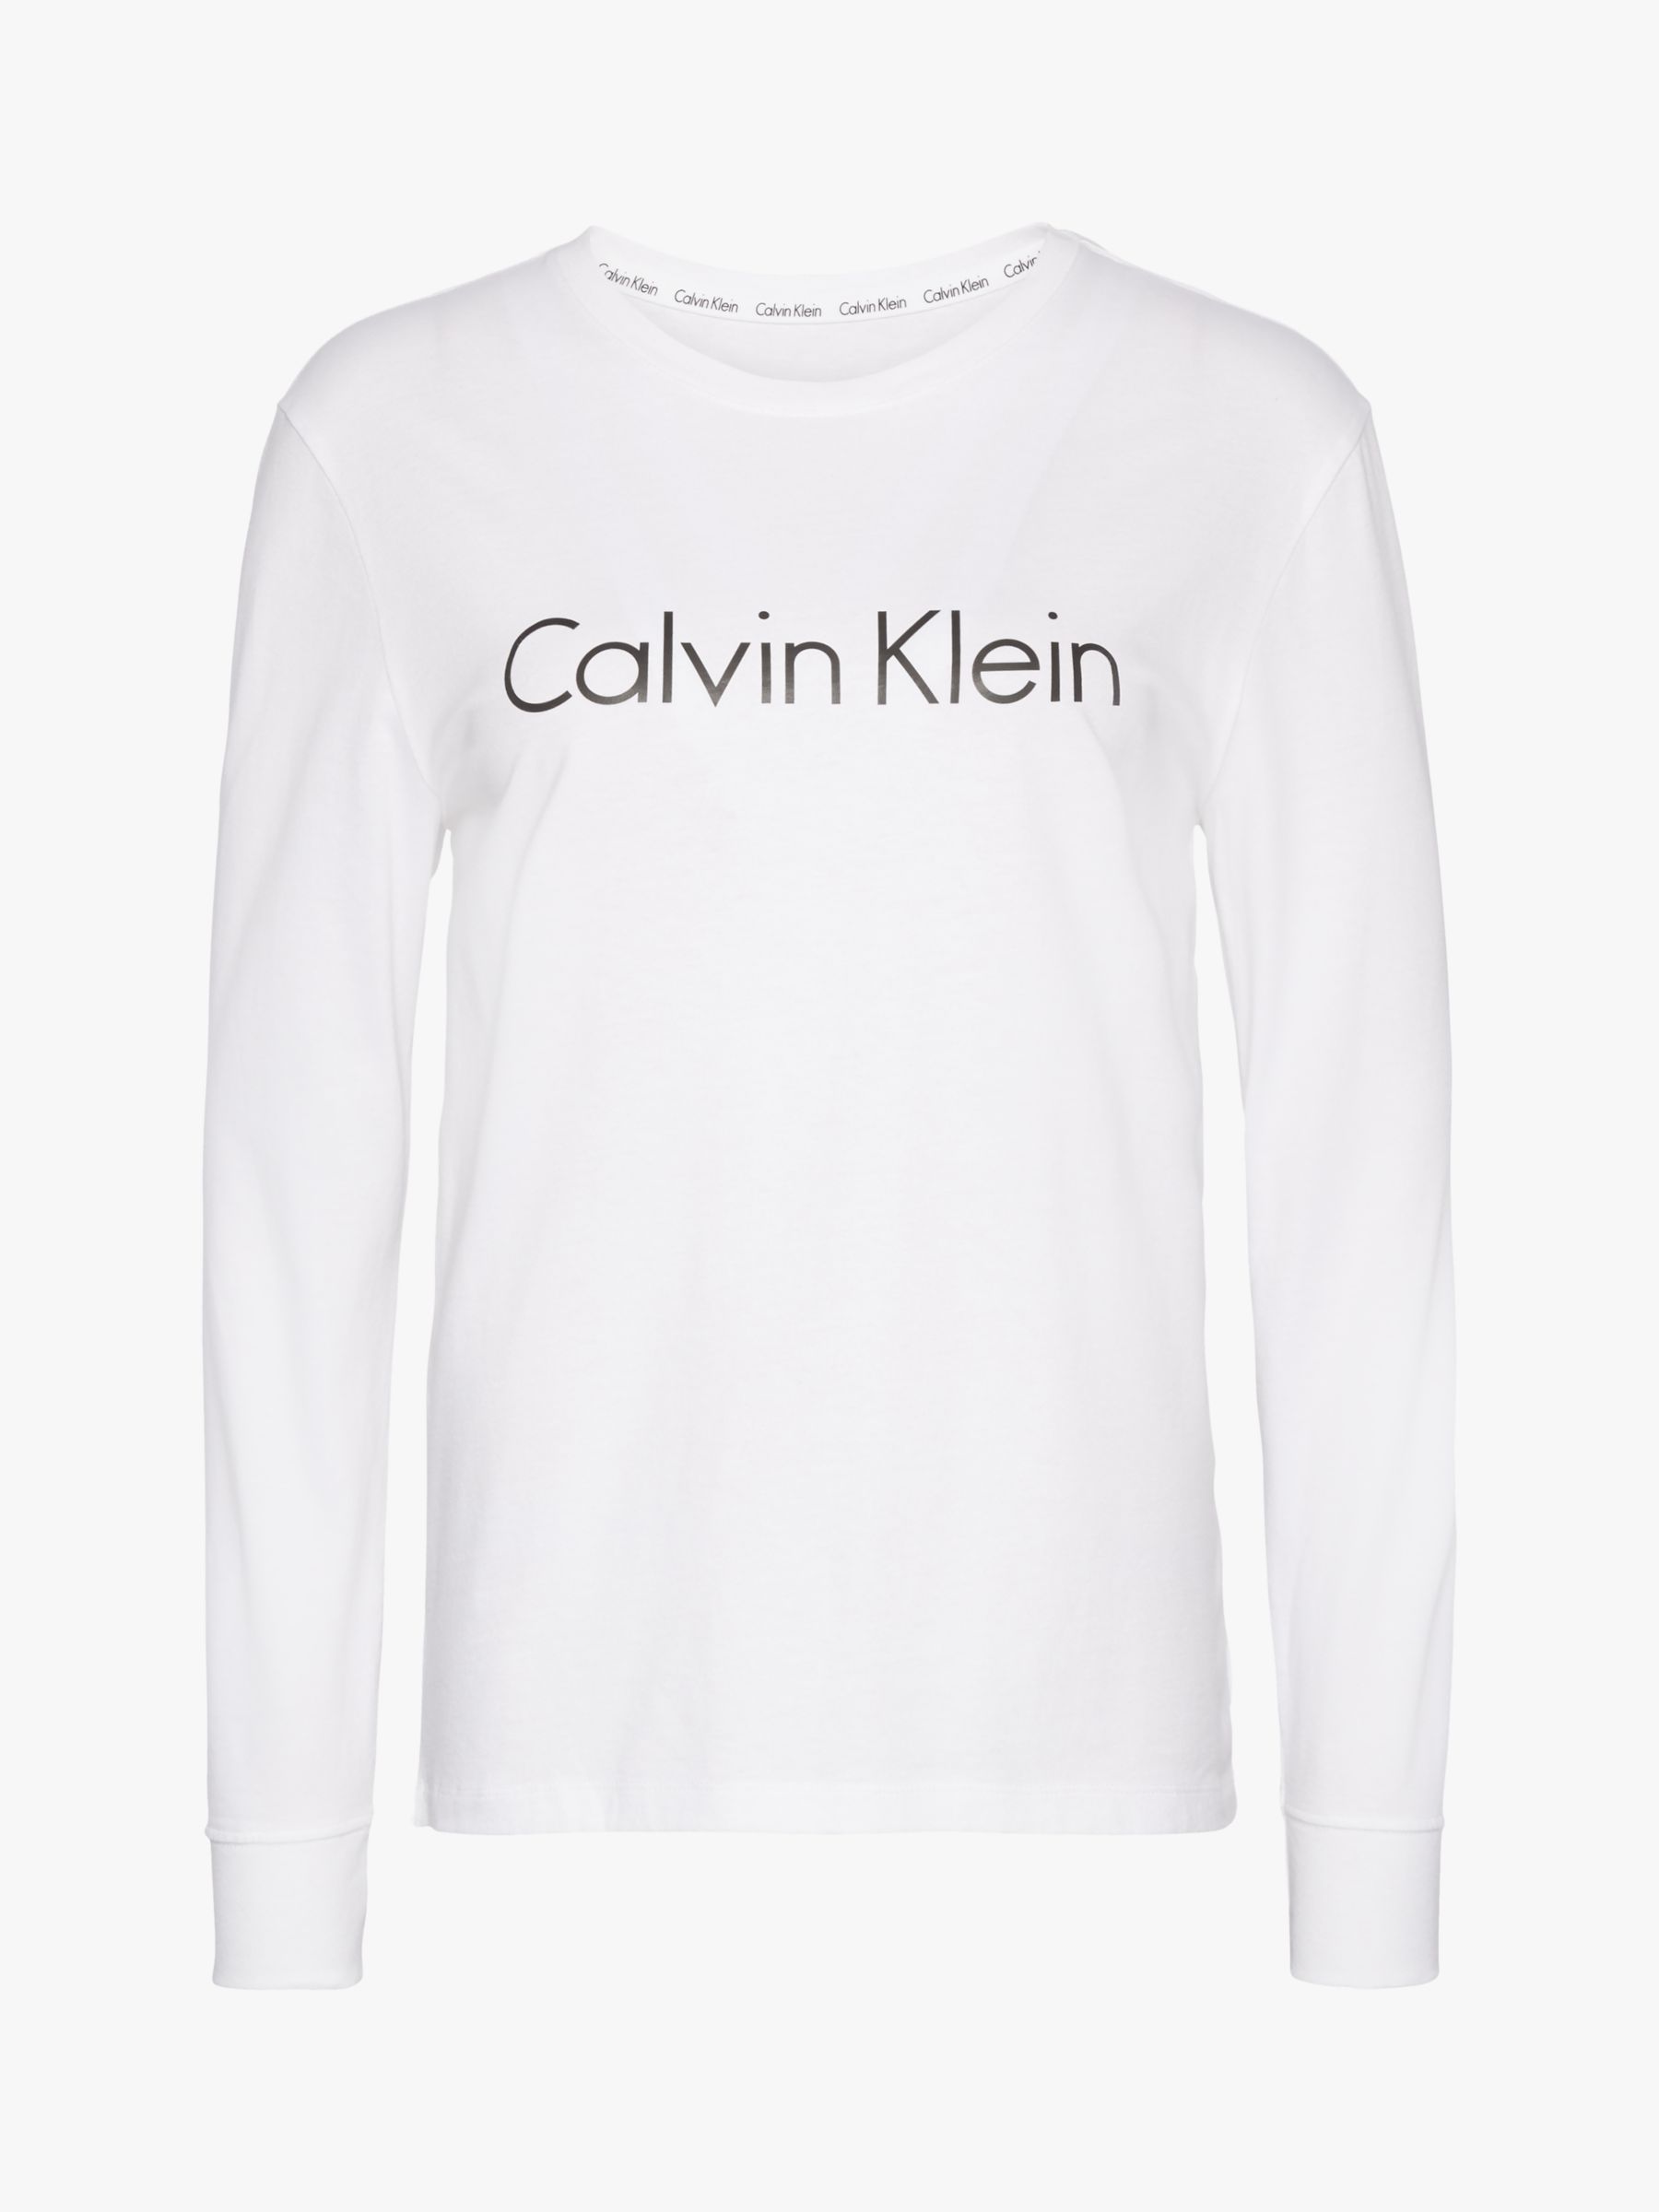 calvin klein white long sleeve top